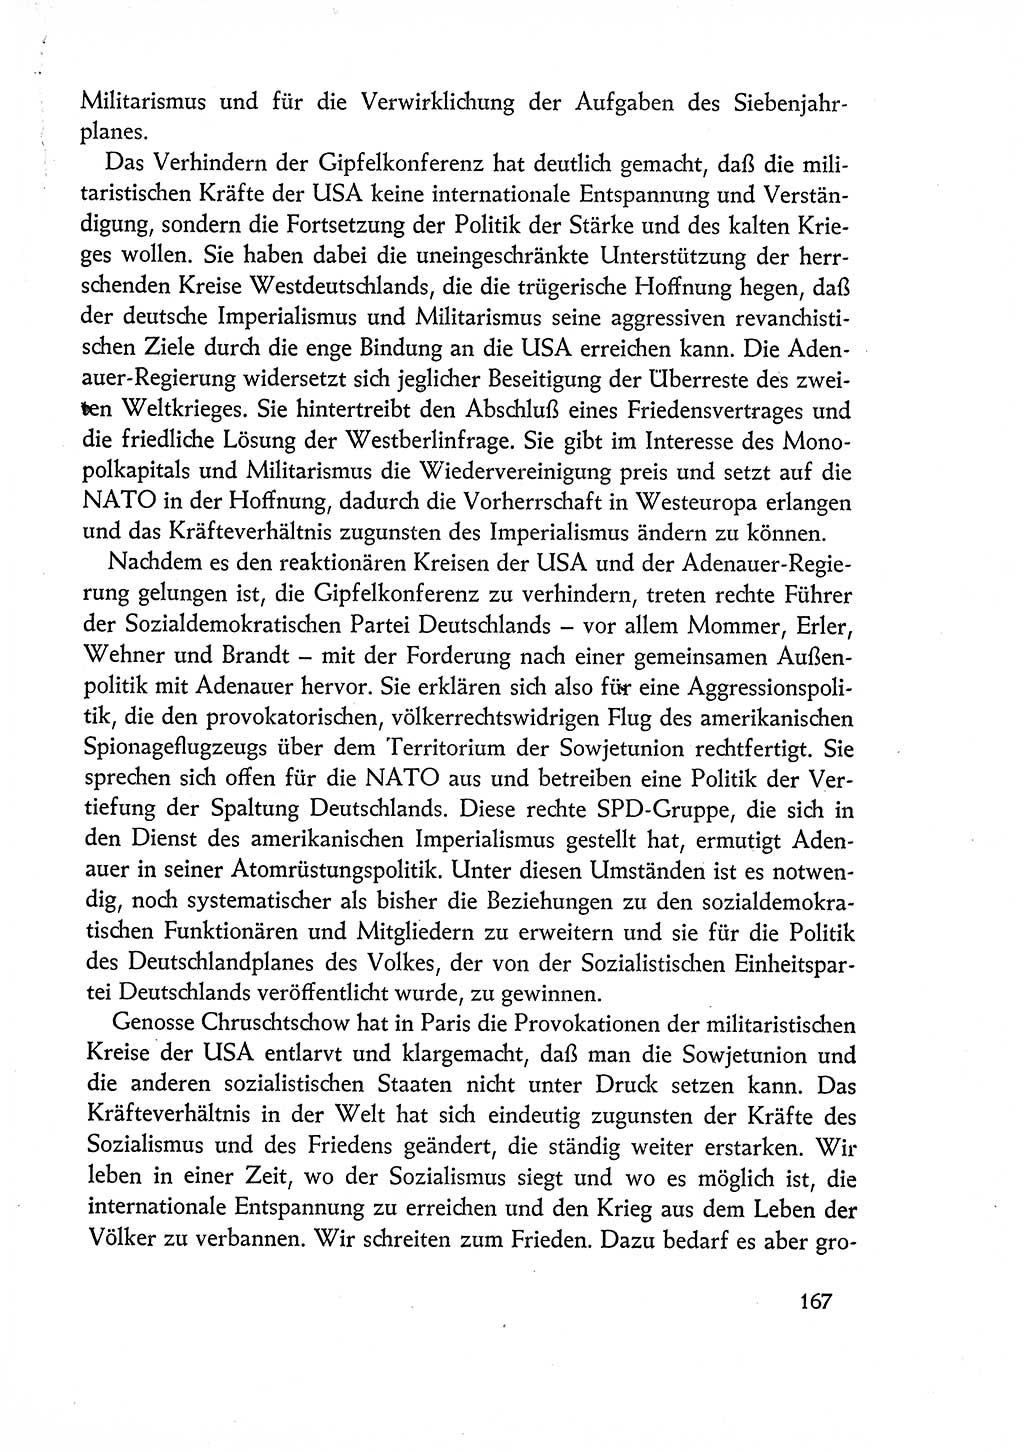 Dokumente der Sozialistischen Einheitspartei Deutschlands (SED) [Deutsche Demokratische Republik (DDR)] 1960-1961, Seite 167 (Dok. SED DDR 1960-1961, S. 167)